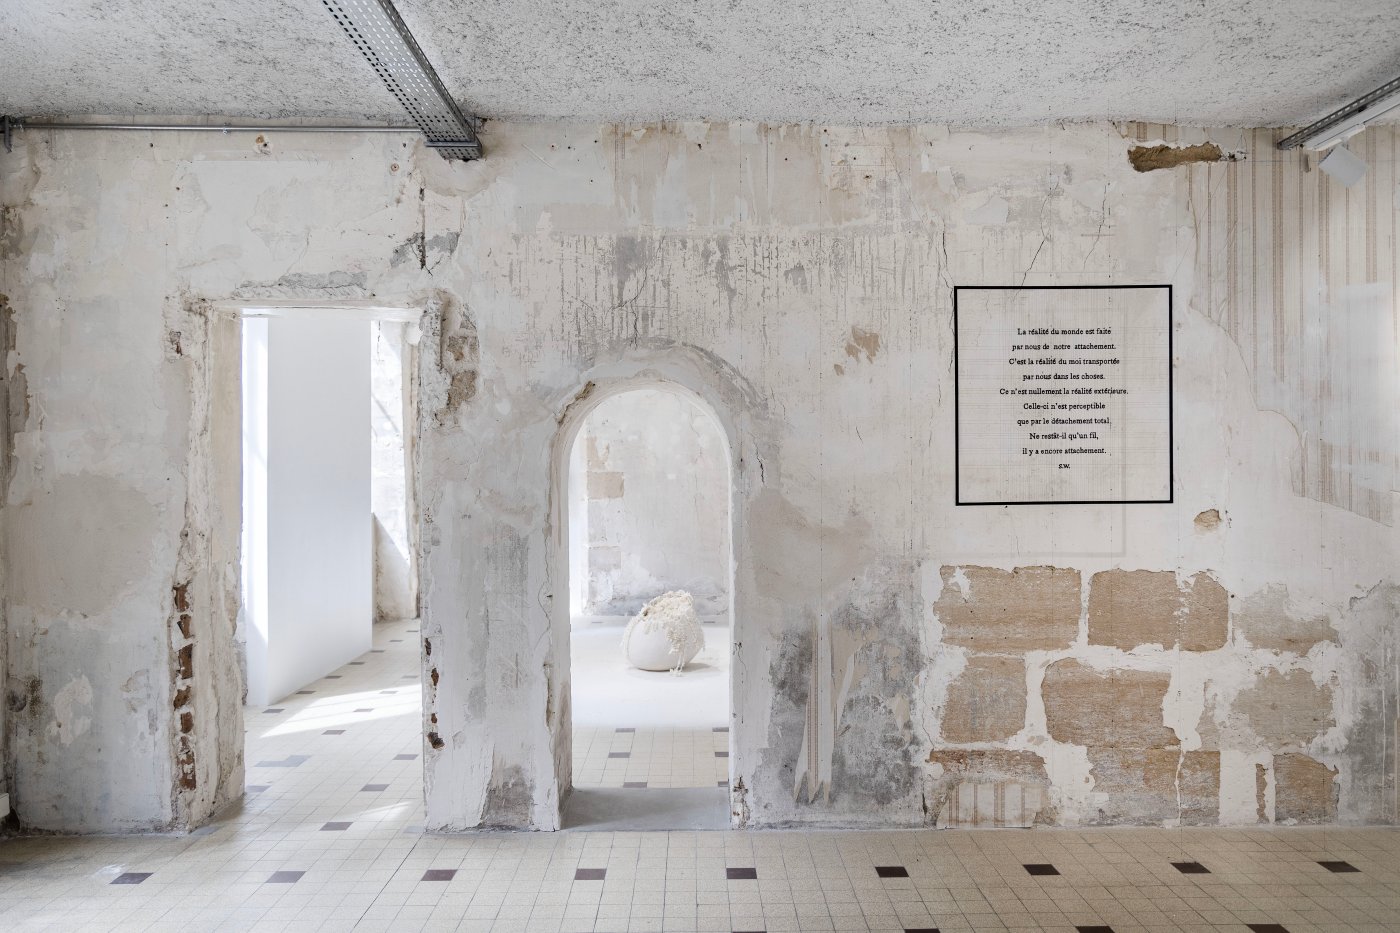 Installation image for Sabrina Mezzaqui: Di punto in bianco, at Galleria Continua